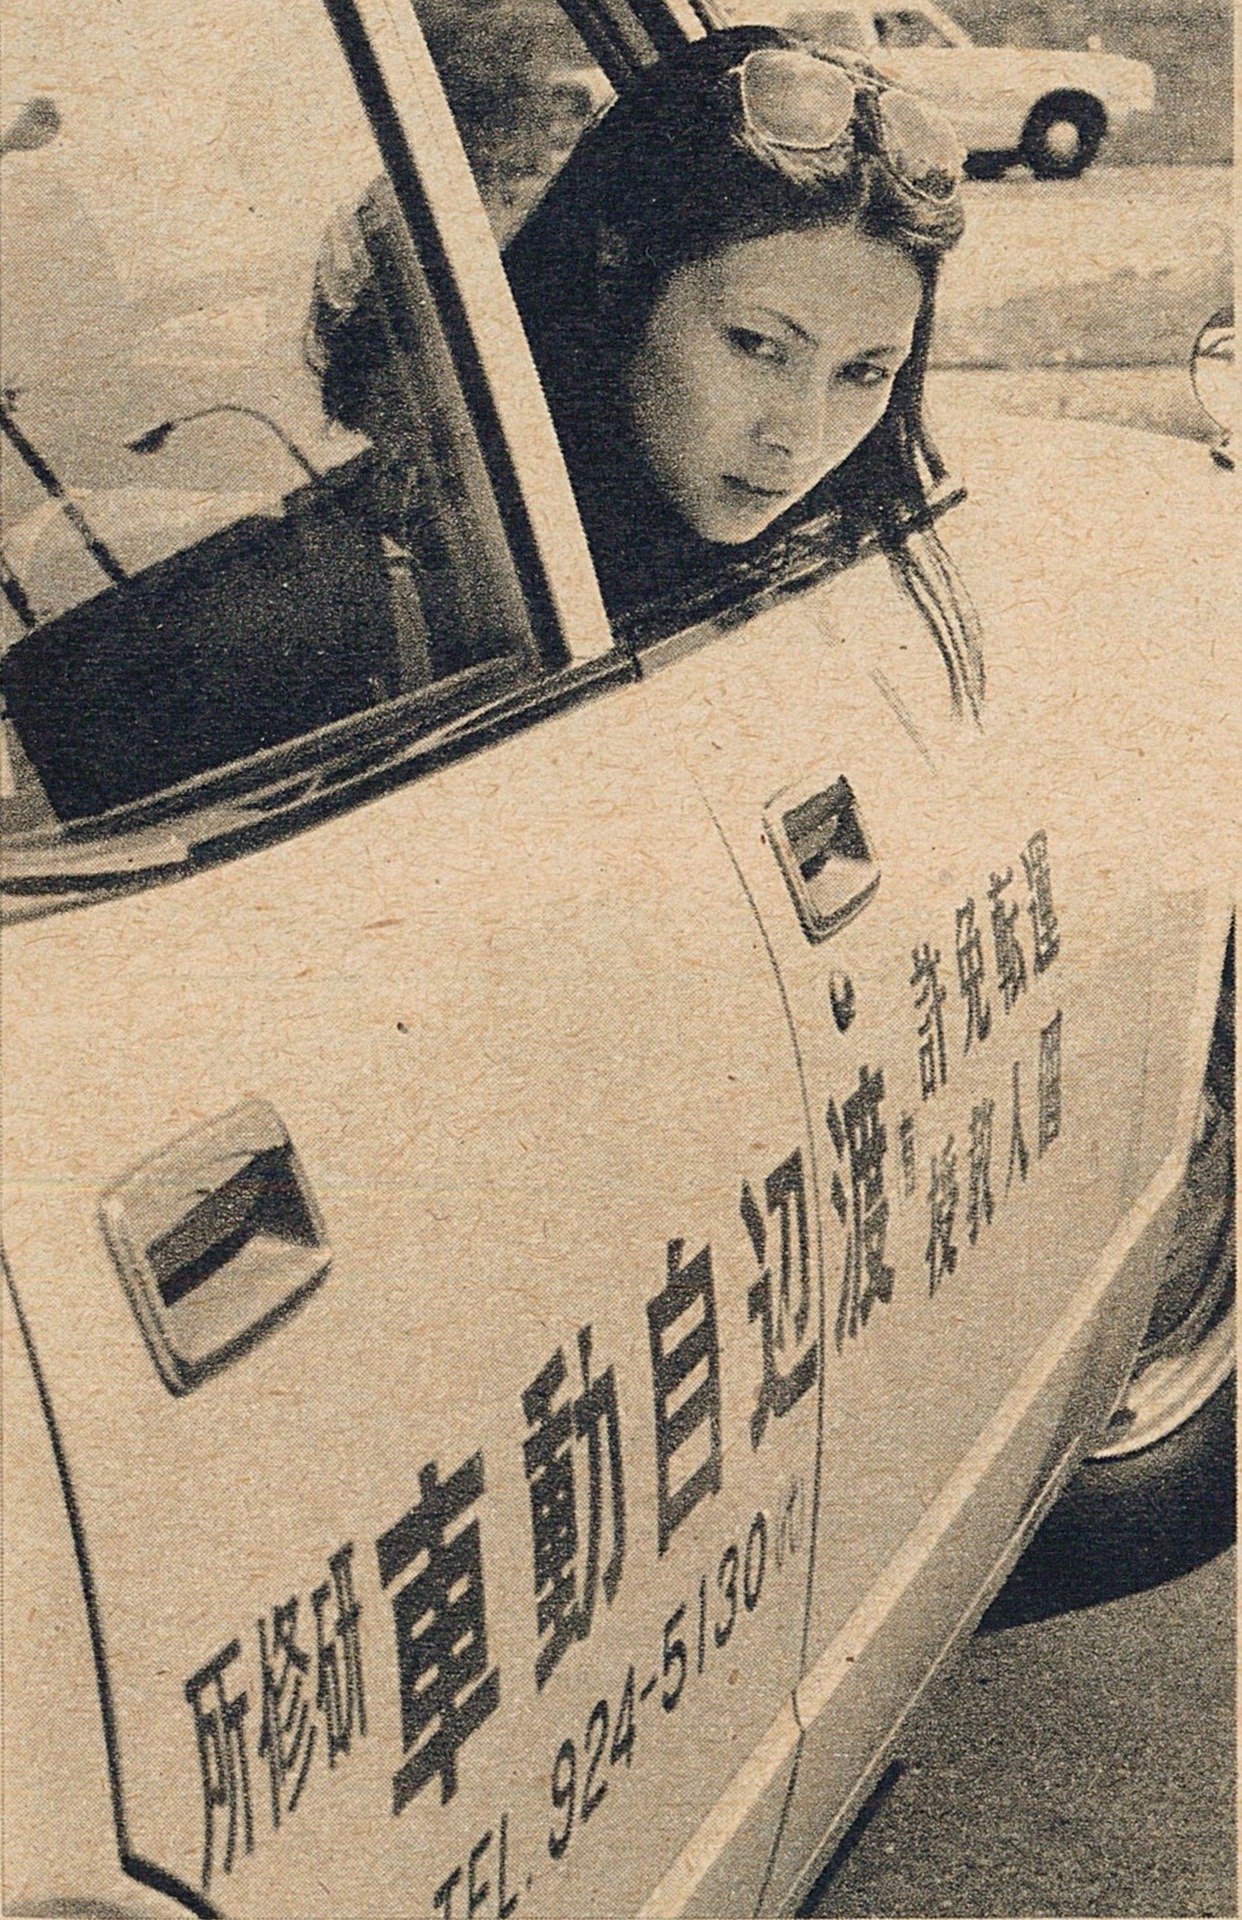 自動車教習所でサングラスをかけて車に乗っている梶芽衣子の画像